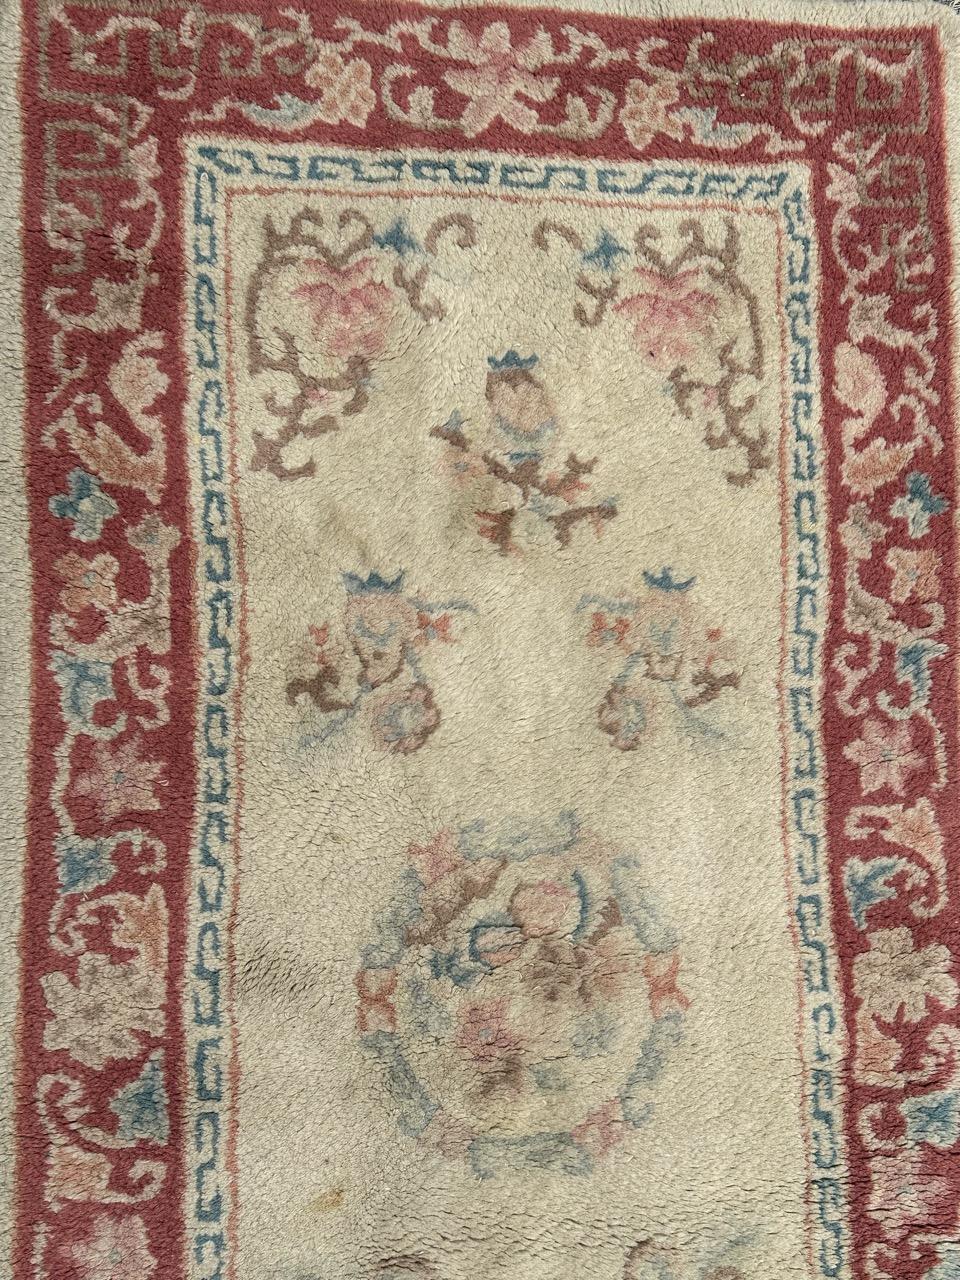 Hübscher chinesischer Teppich aus der Mitte des Jahrhunderts mit schönem chinesischem Design und schönen Farben in Weiß, Rosa, Blau, Grün und Braun, vollständig von Hand getuftet, mit Wolle.

✨✨✨
